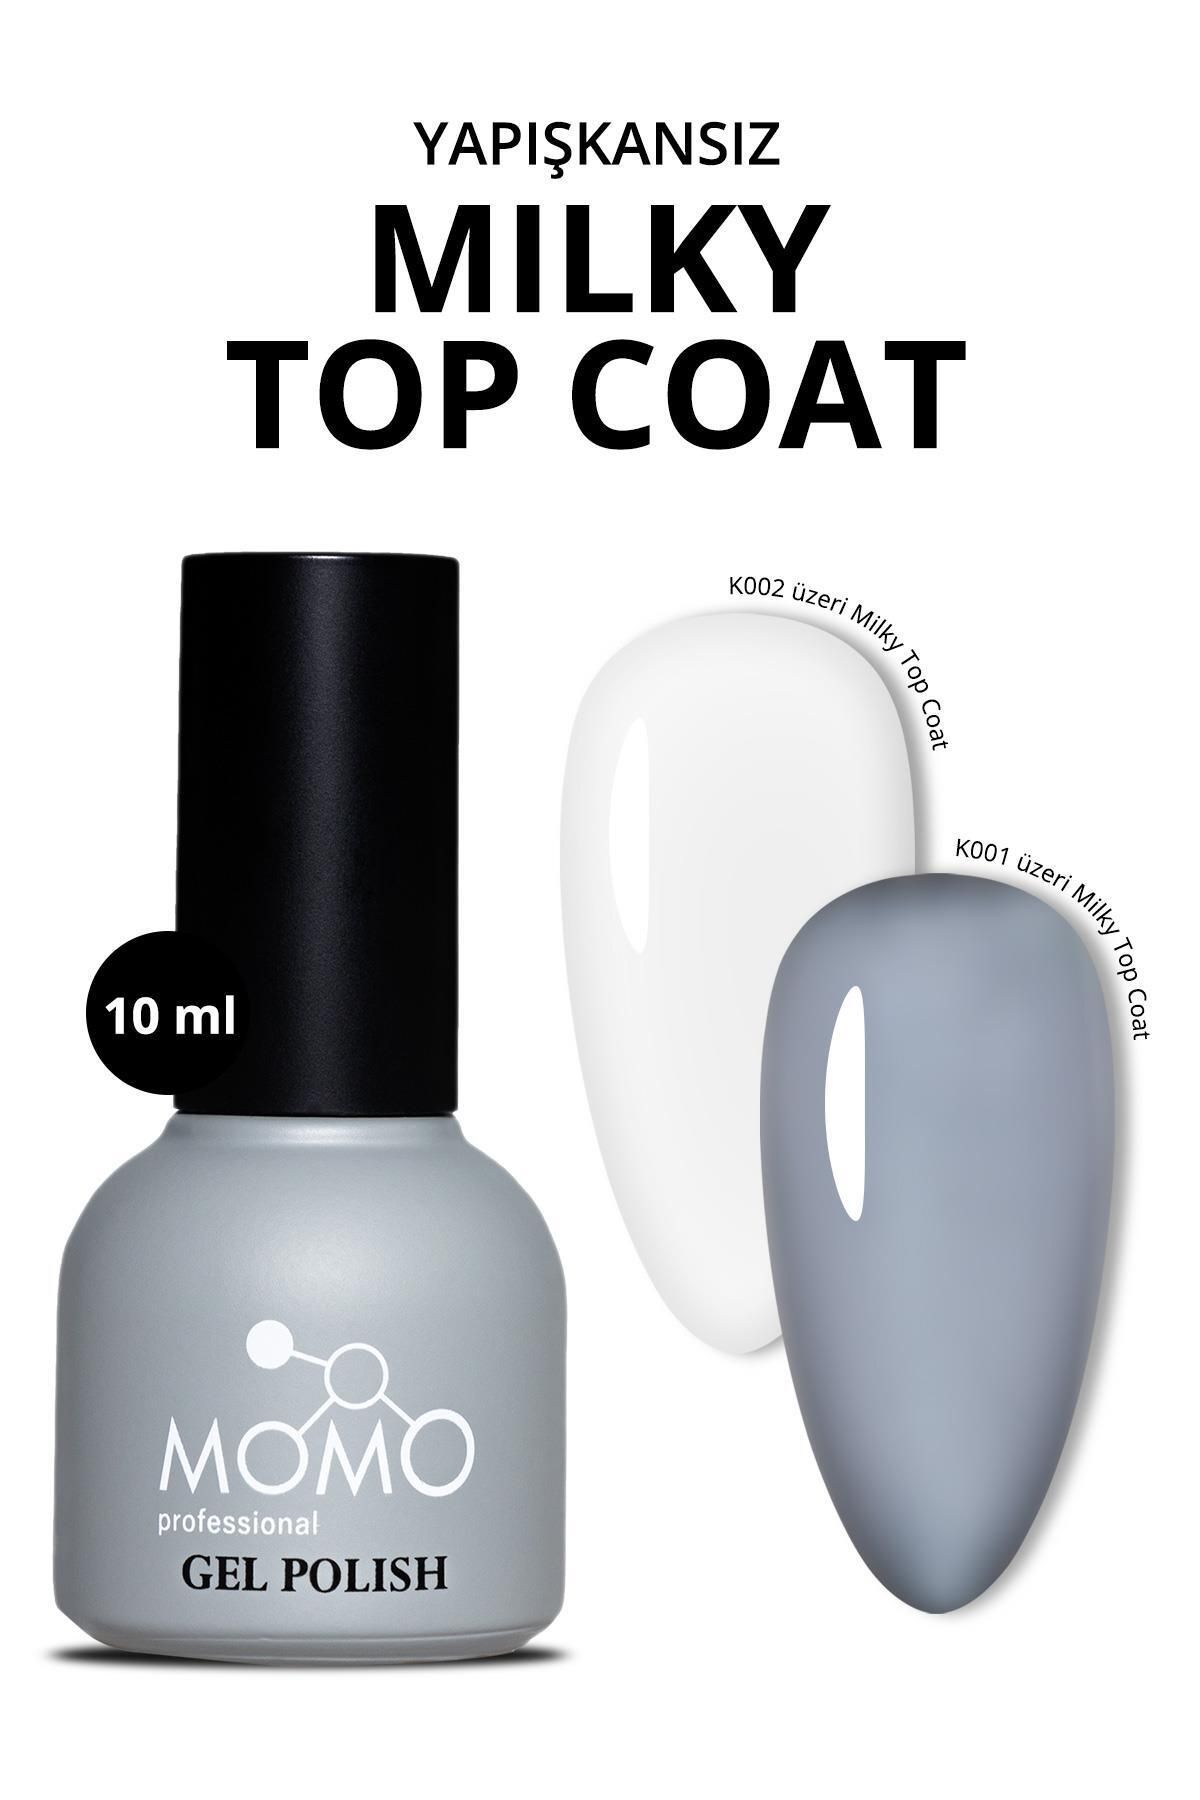 MOMO professional Kalıcı Oje Için Milky Top Coat, Rakı Beyazı, 10 ml